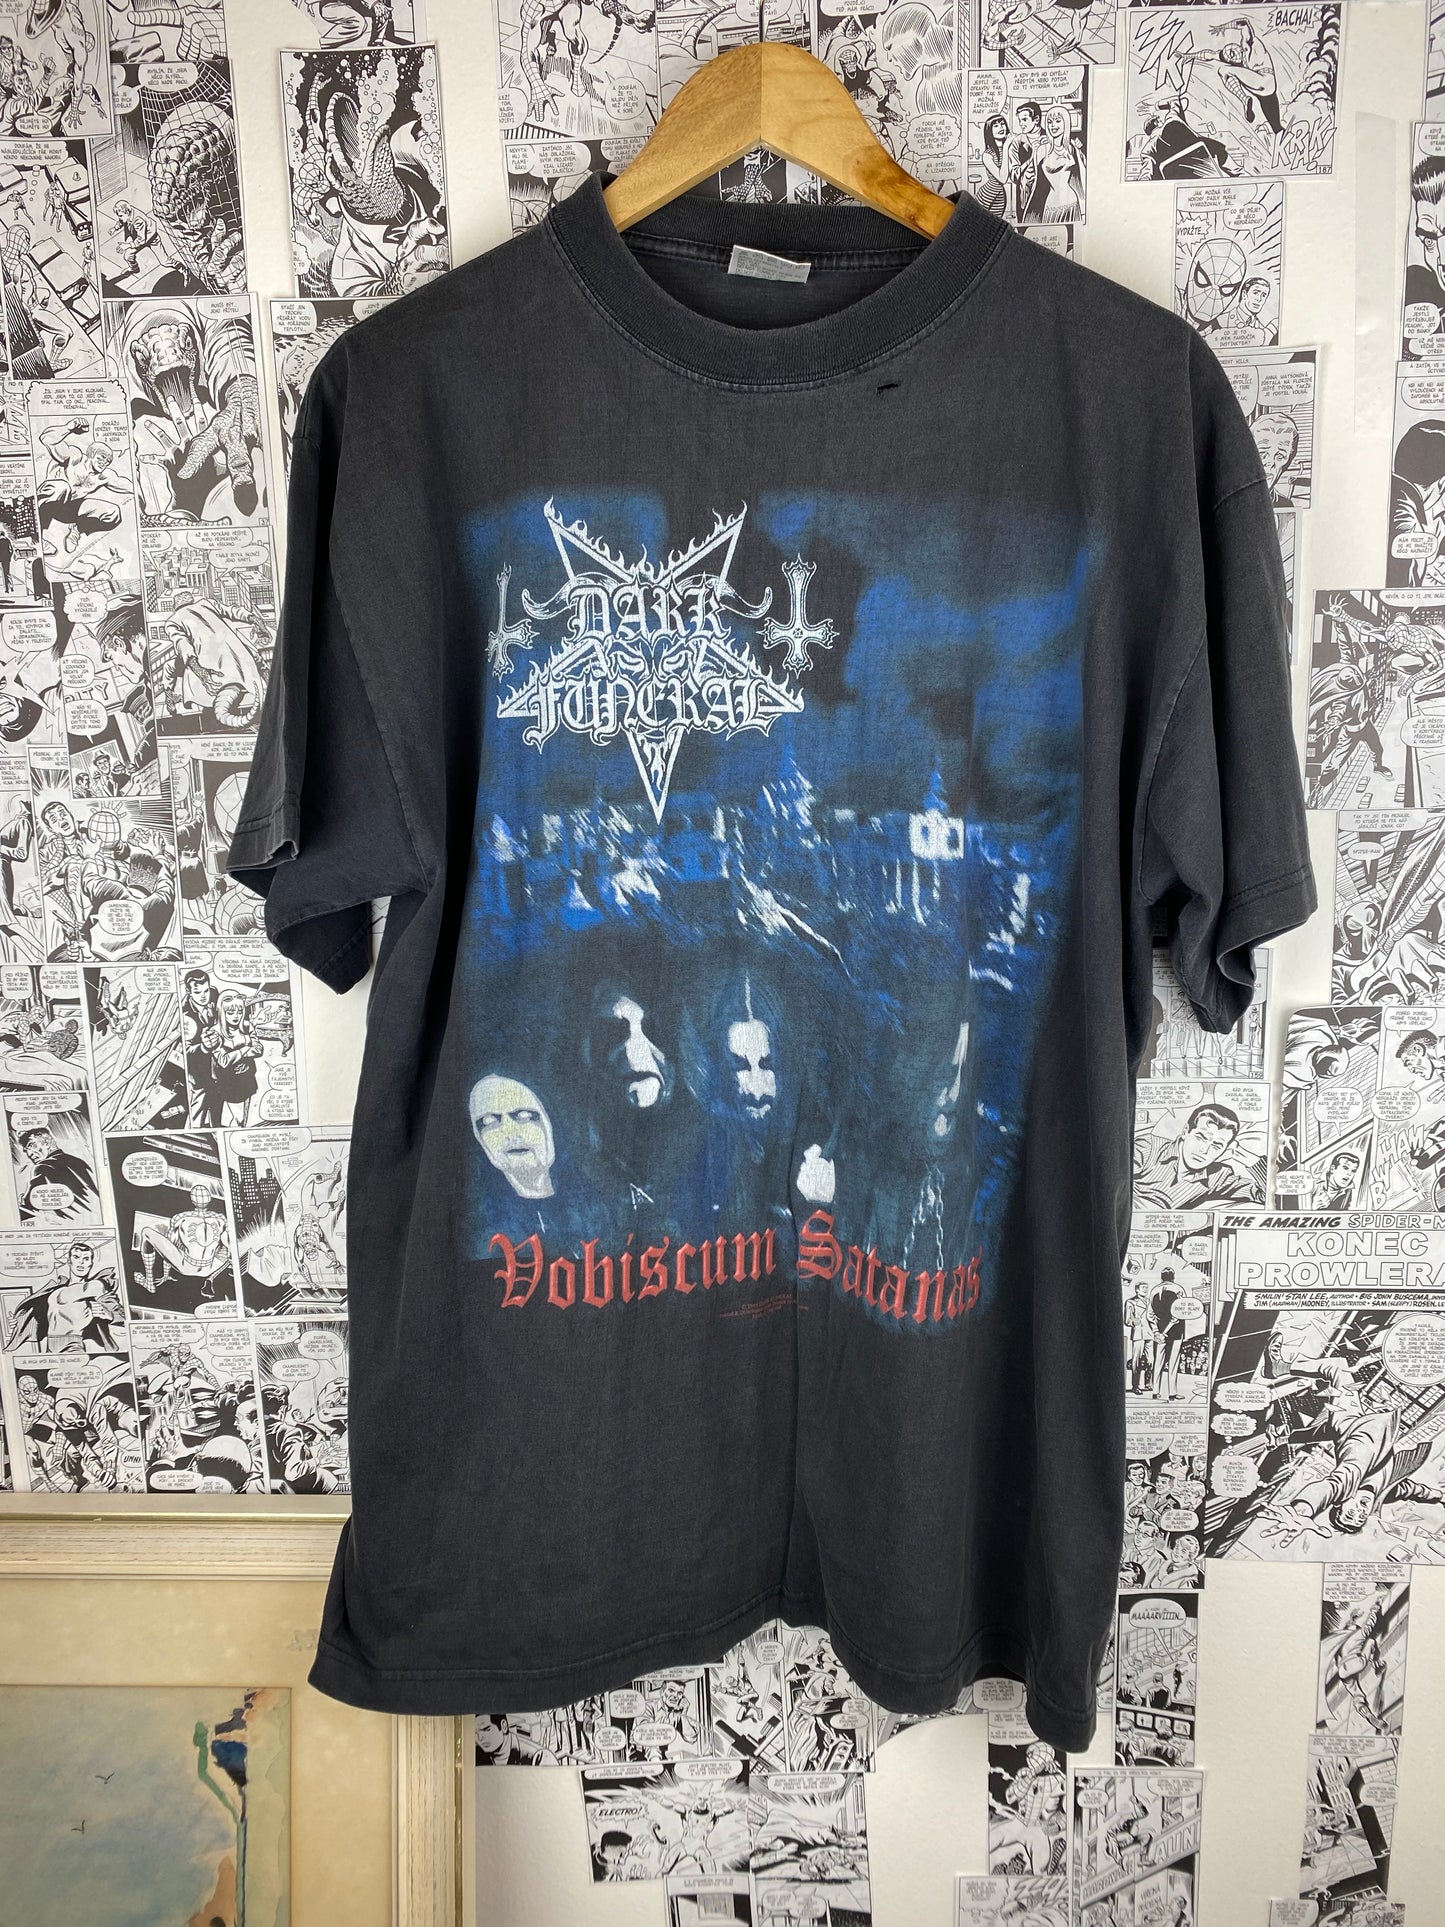 Vintage Dark Funeral “Vobiscum Satanas” 1998 t-shirt - size XL